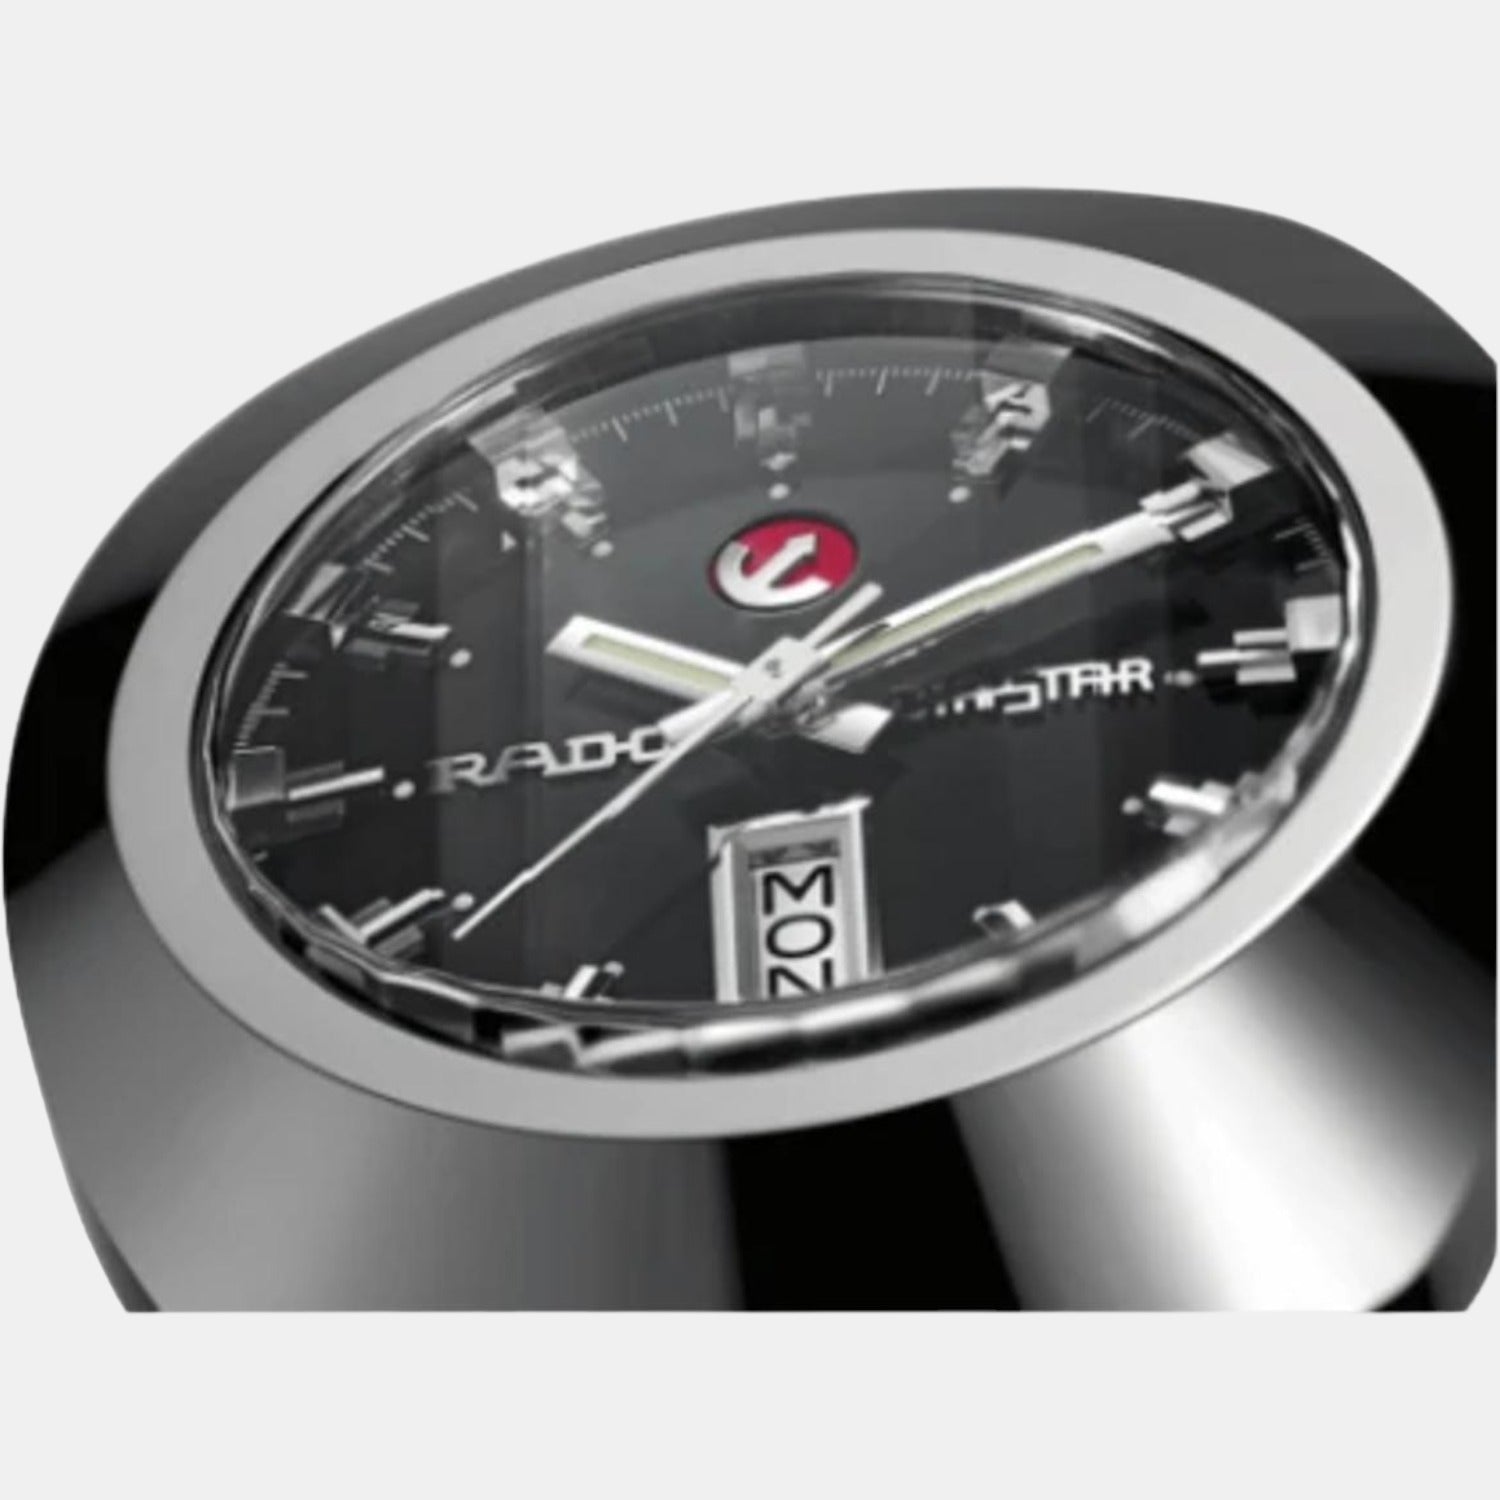 rado-stainless-steel-black-analog-men-watch-r12408623